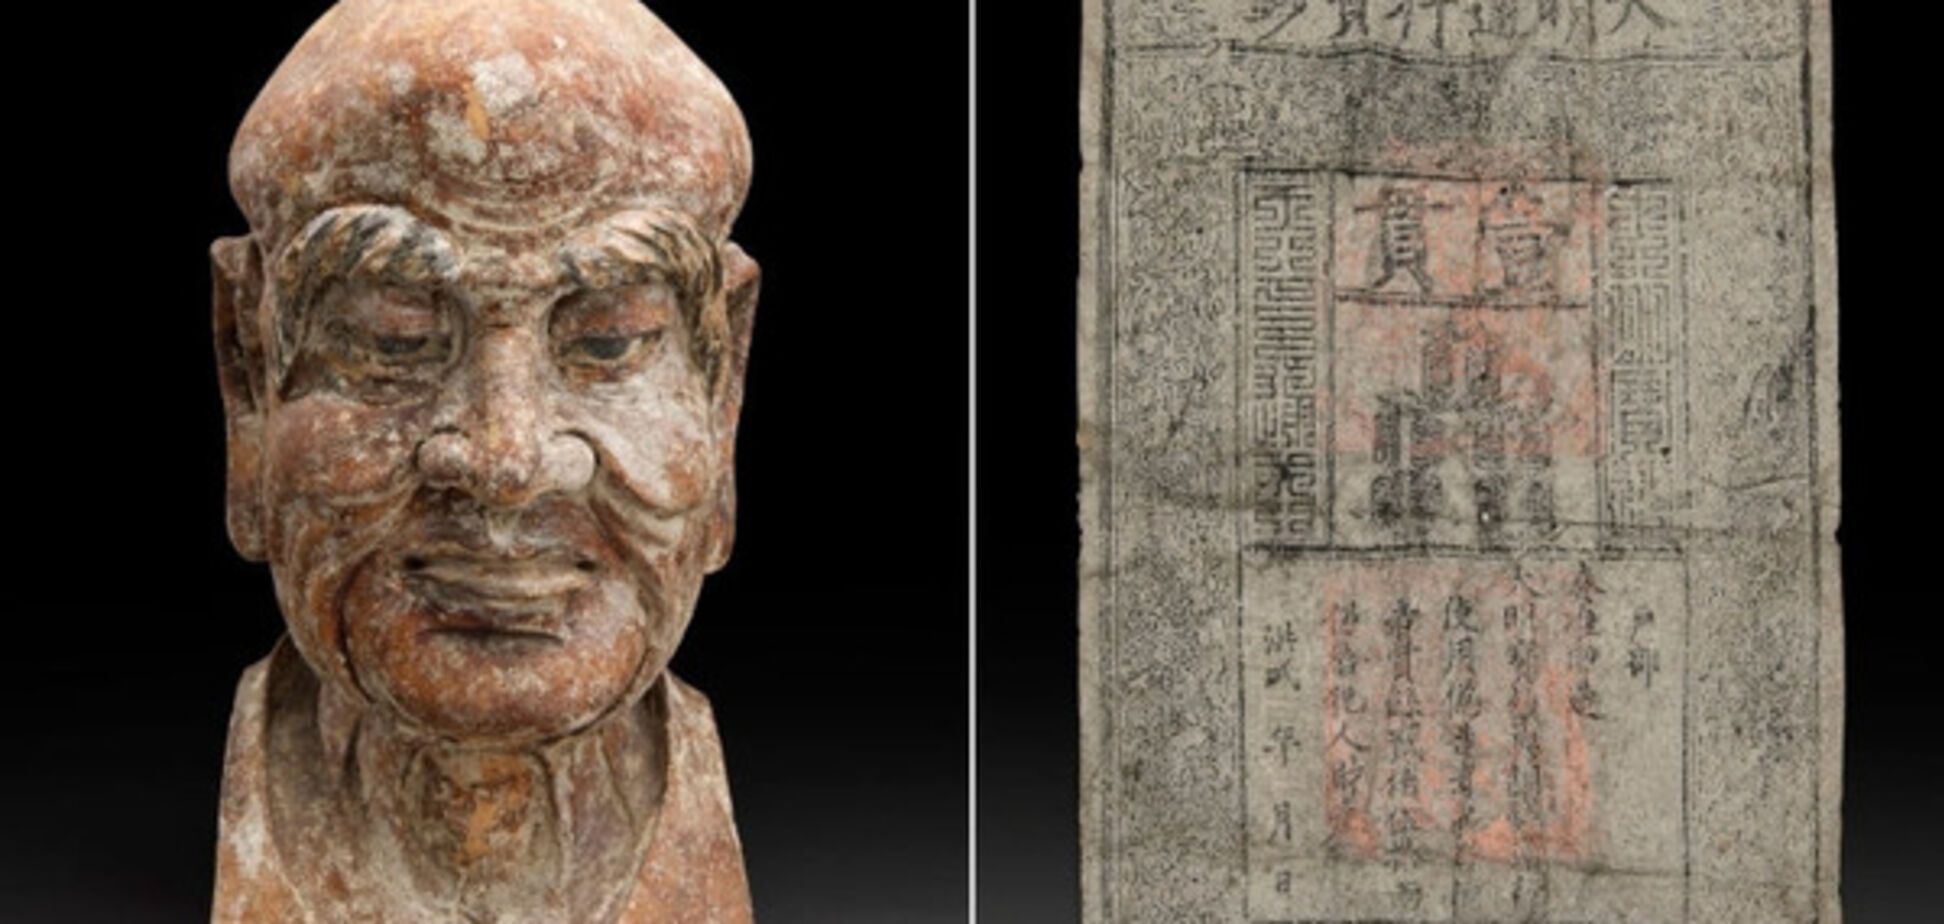 китайская древняя статуя и банкнота времен династии Мин